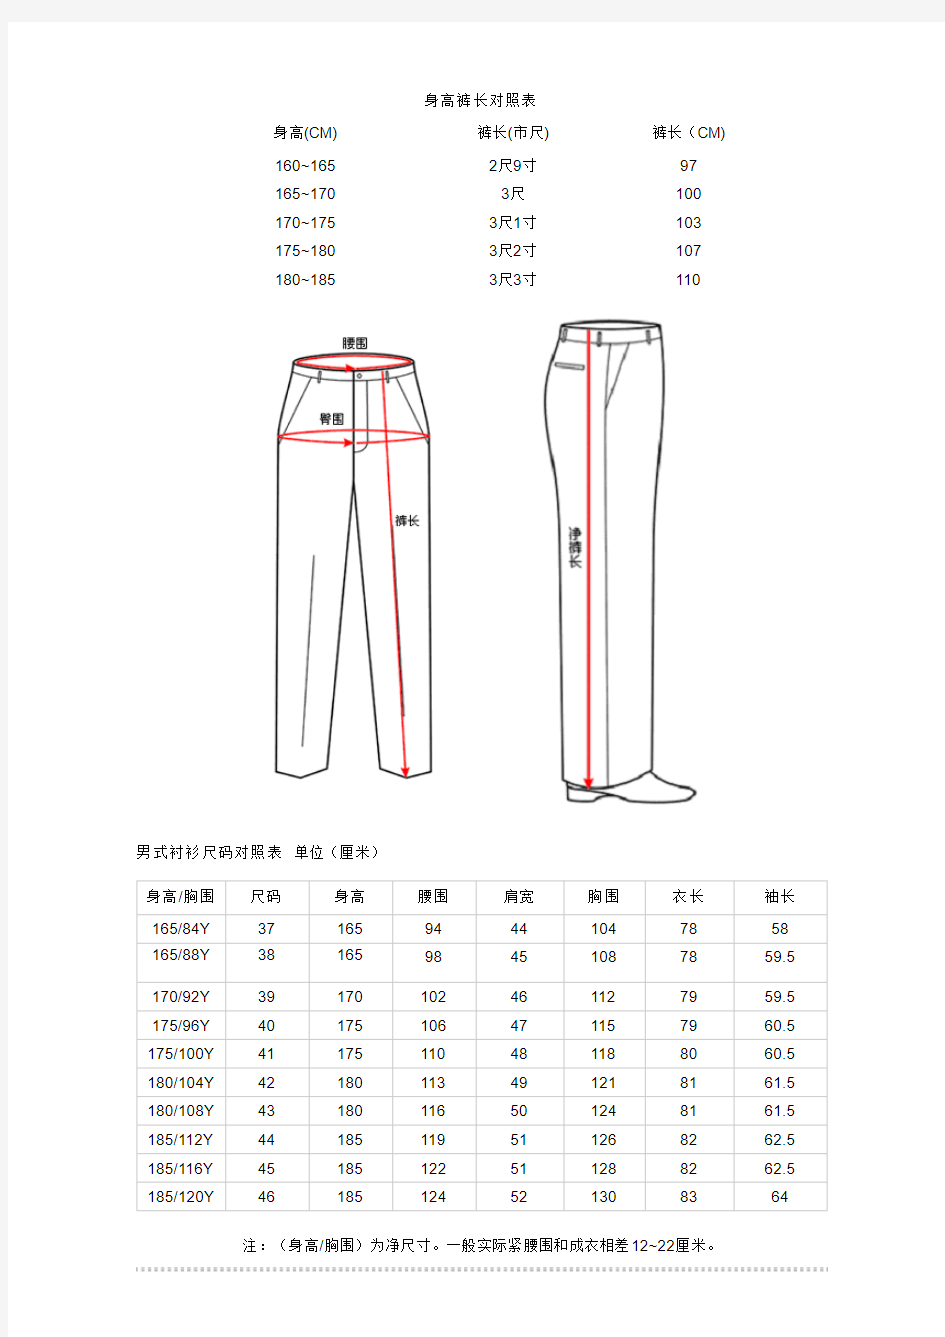 裤子尺寸对照表,衣服尺寸对照表,服装尺寸对照表 - 尺码对照表